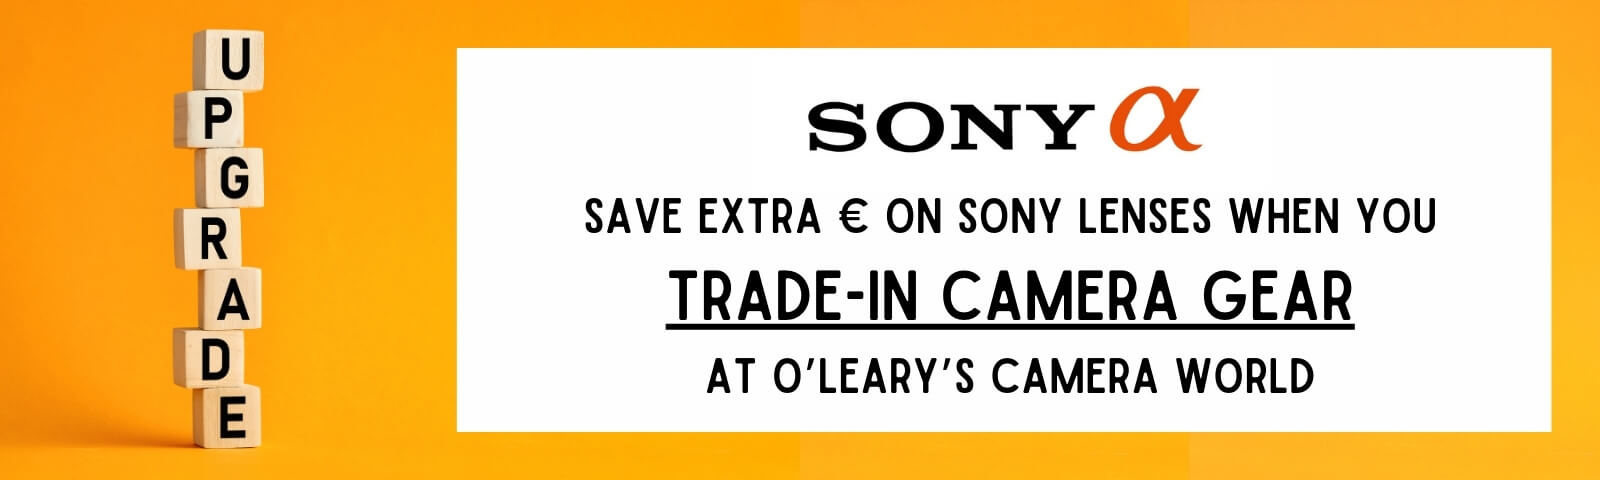 Sony Lens sale Ireland